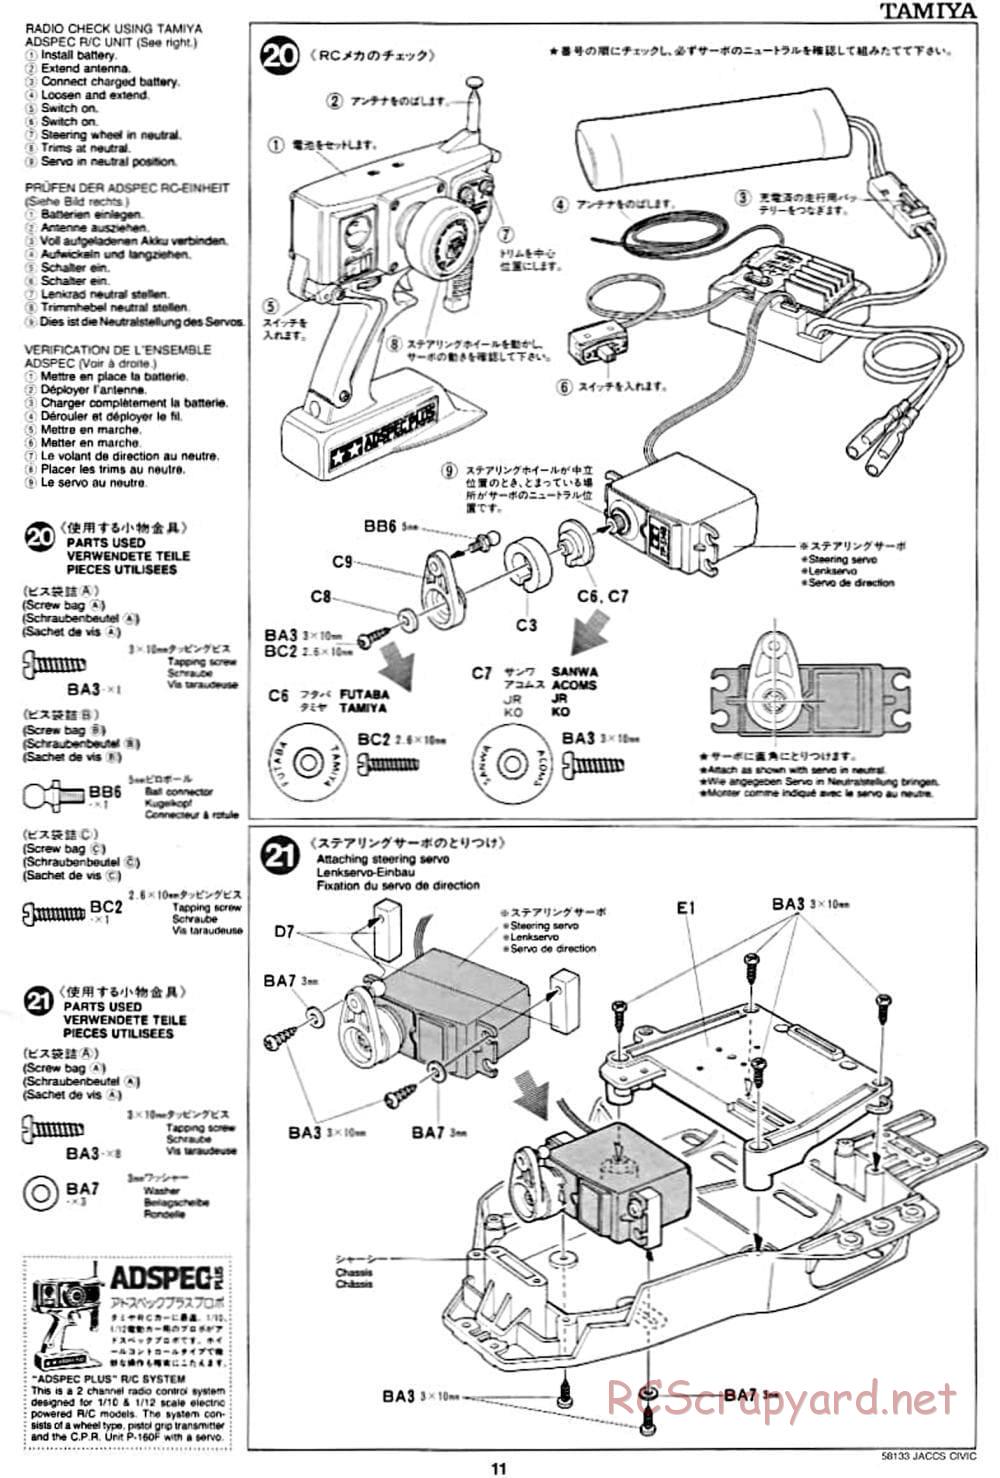 Tamiya - JACCS Honda Civic - FF-01 Chassis - Manual - Page 11